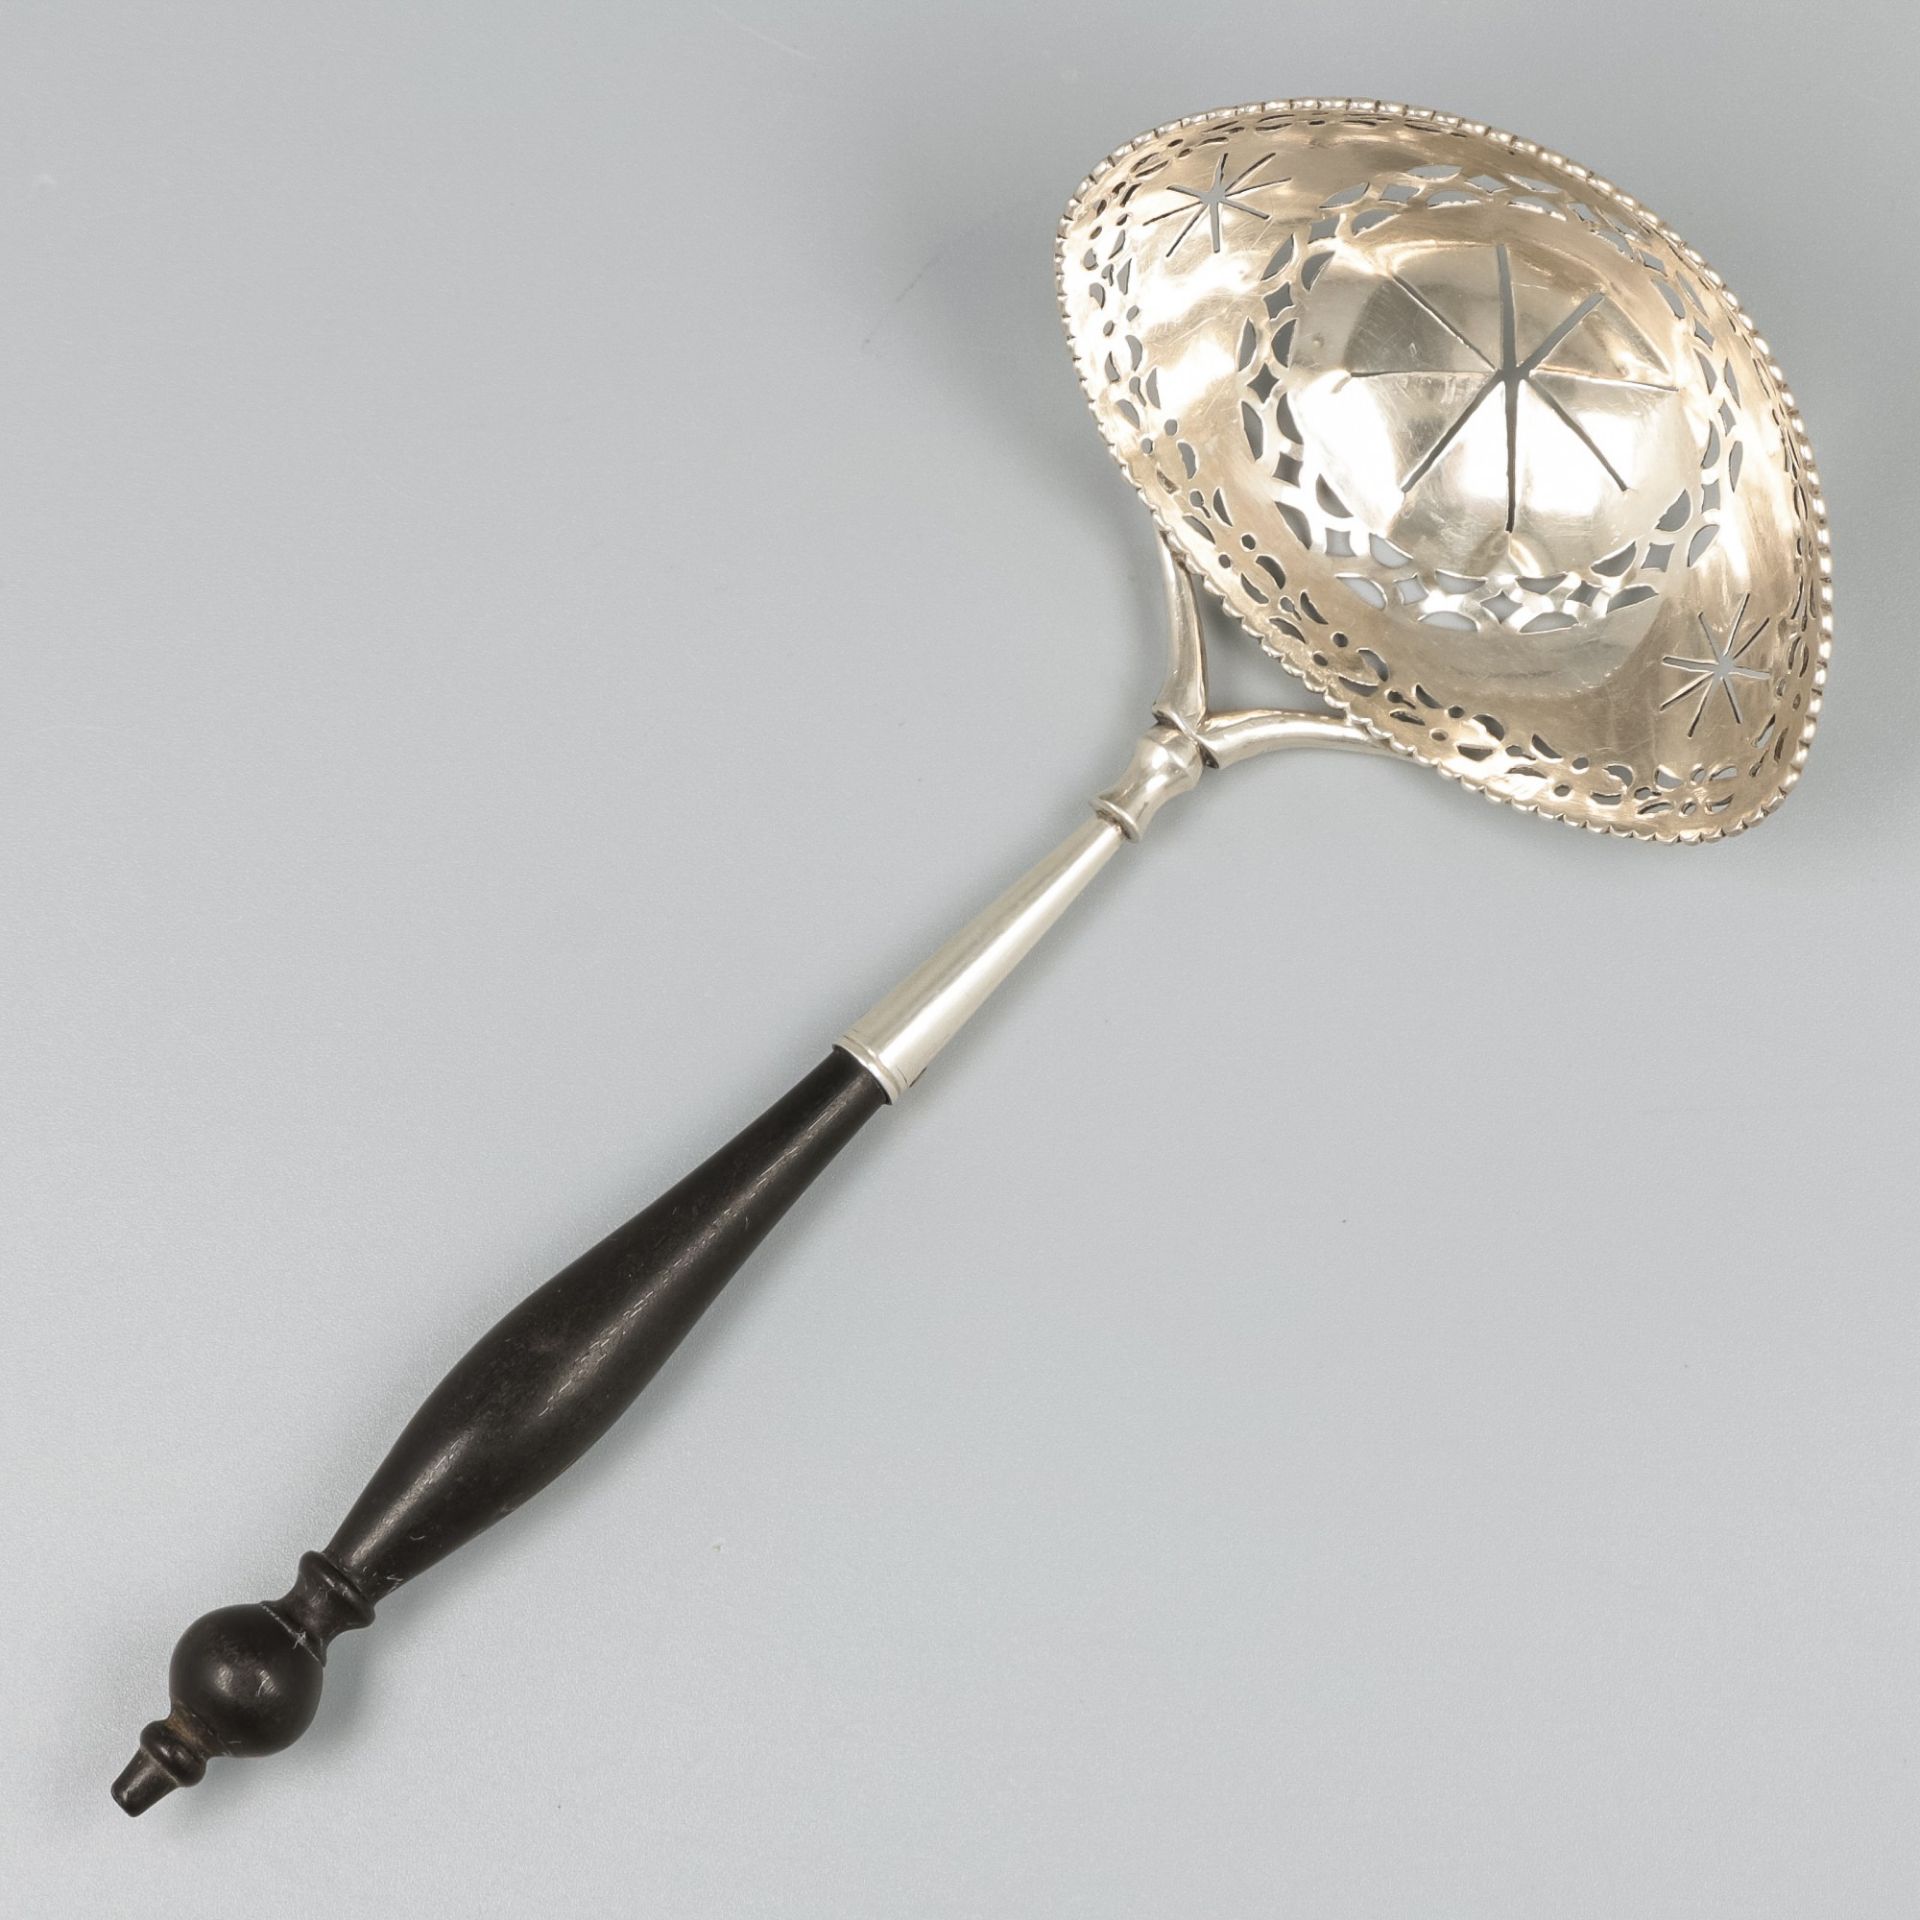 Silver sifter spoon, Adrianus Koekebakker, Amsterdam 1791-1811.